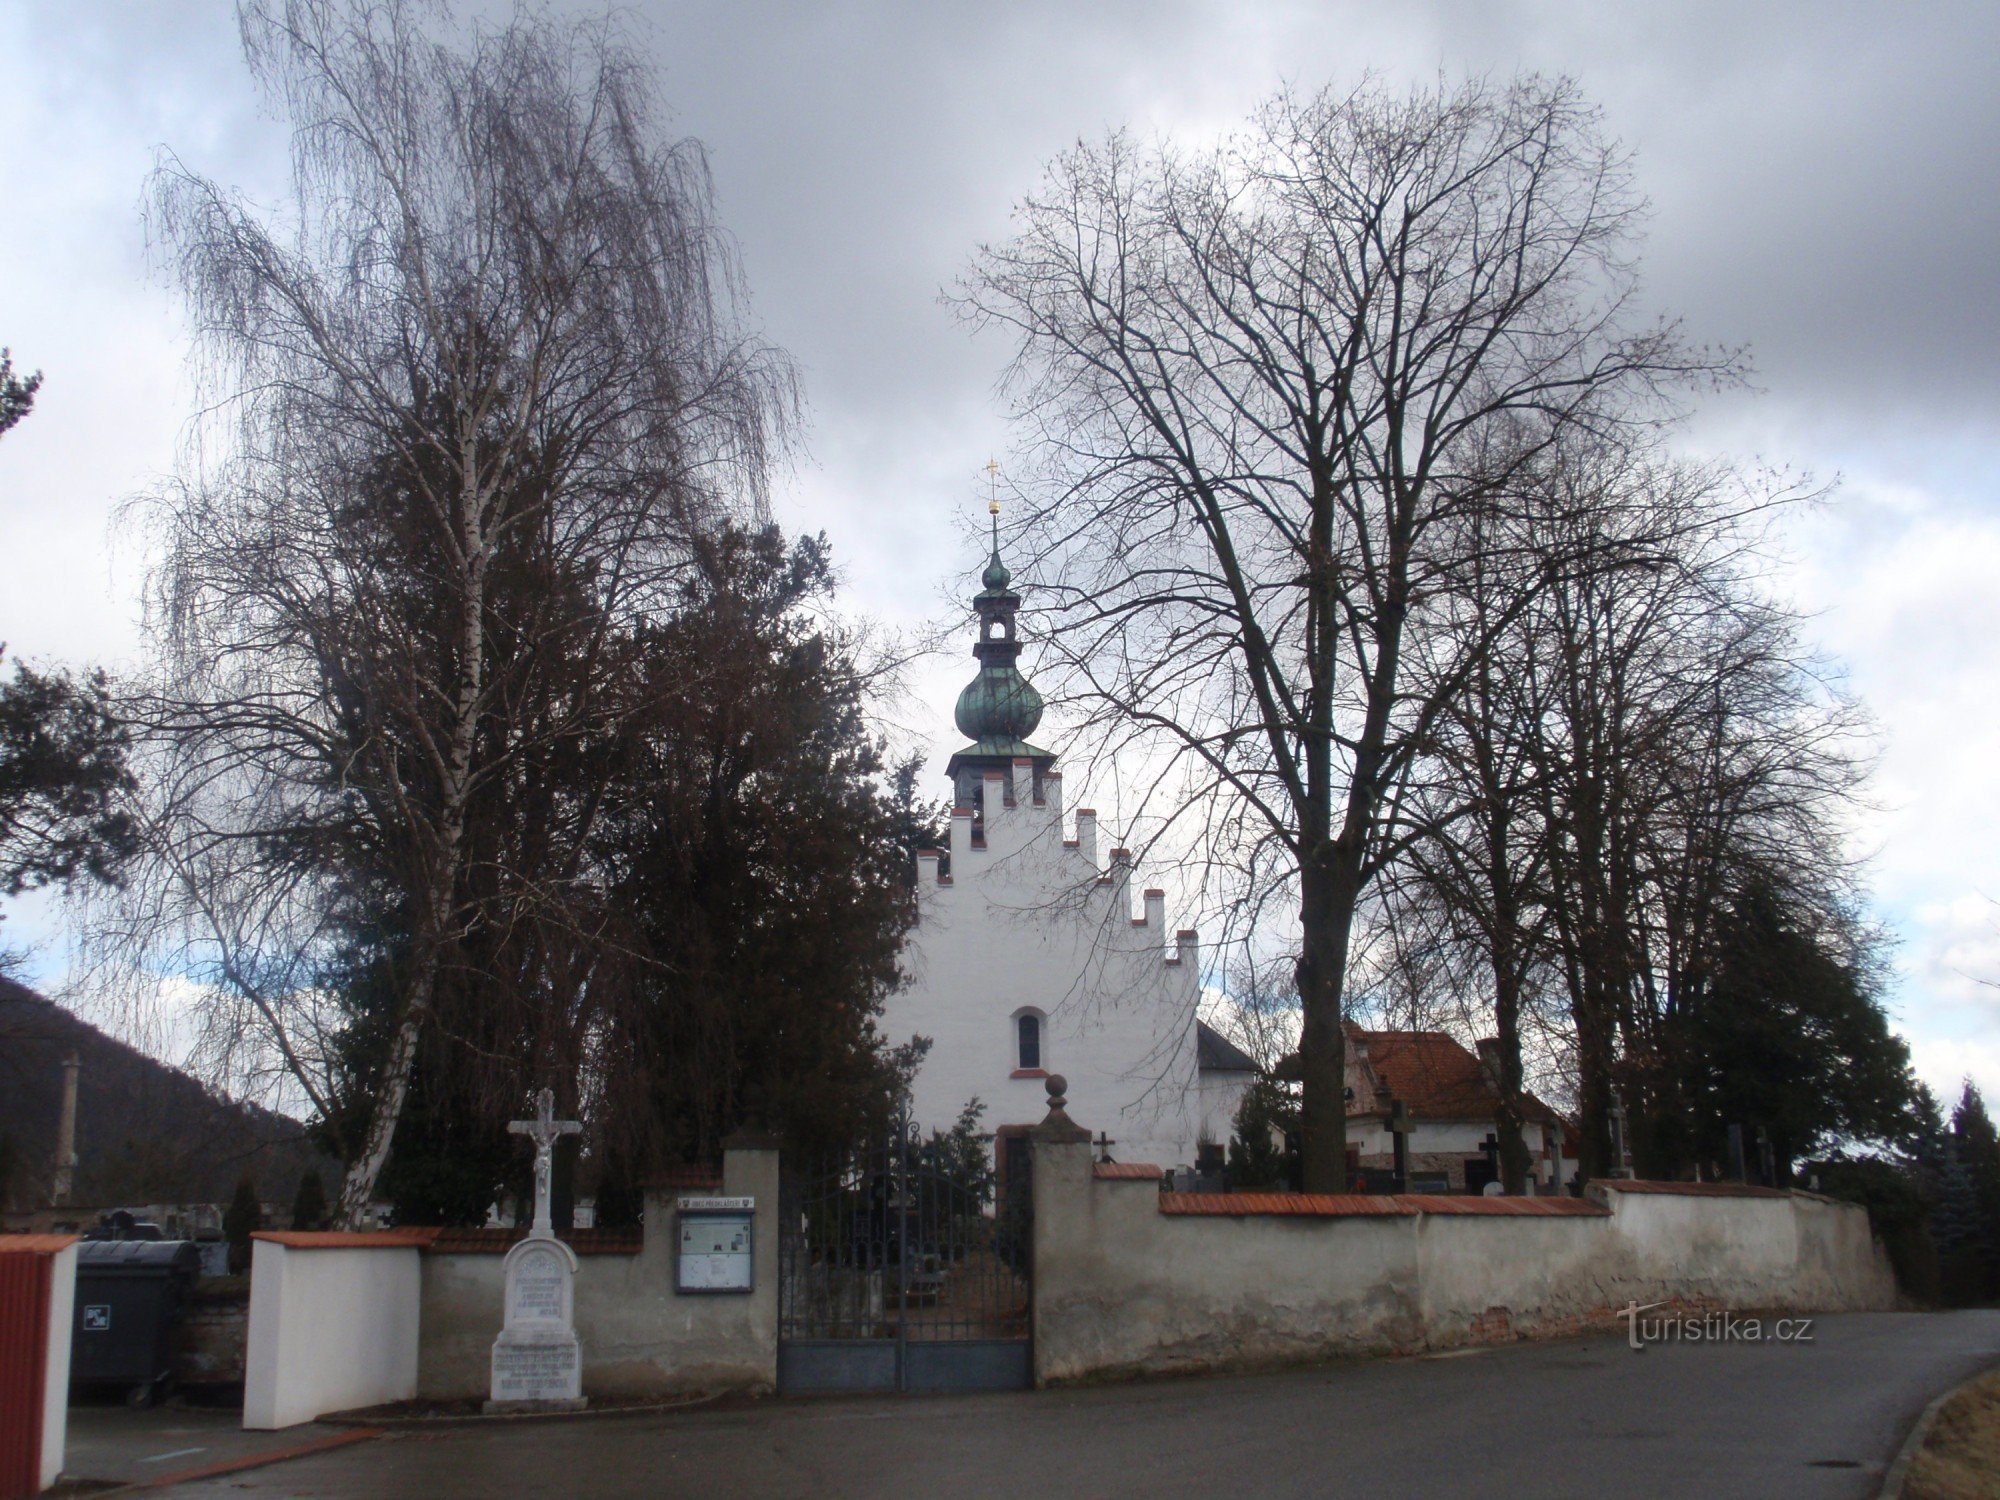 Tiền tu viện gần Tišnov - đài kỷ niệm nhỏ